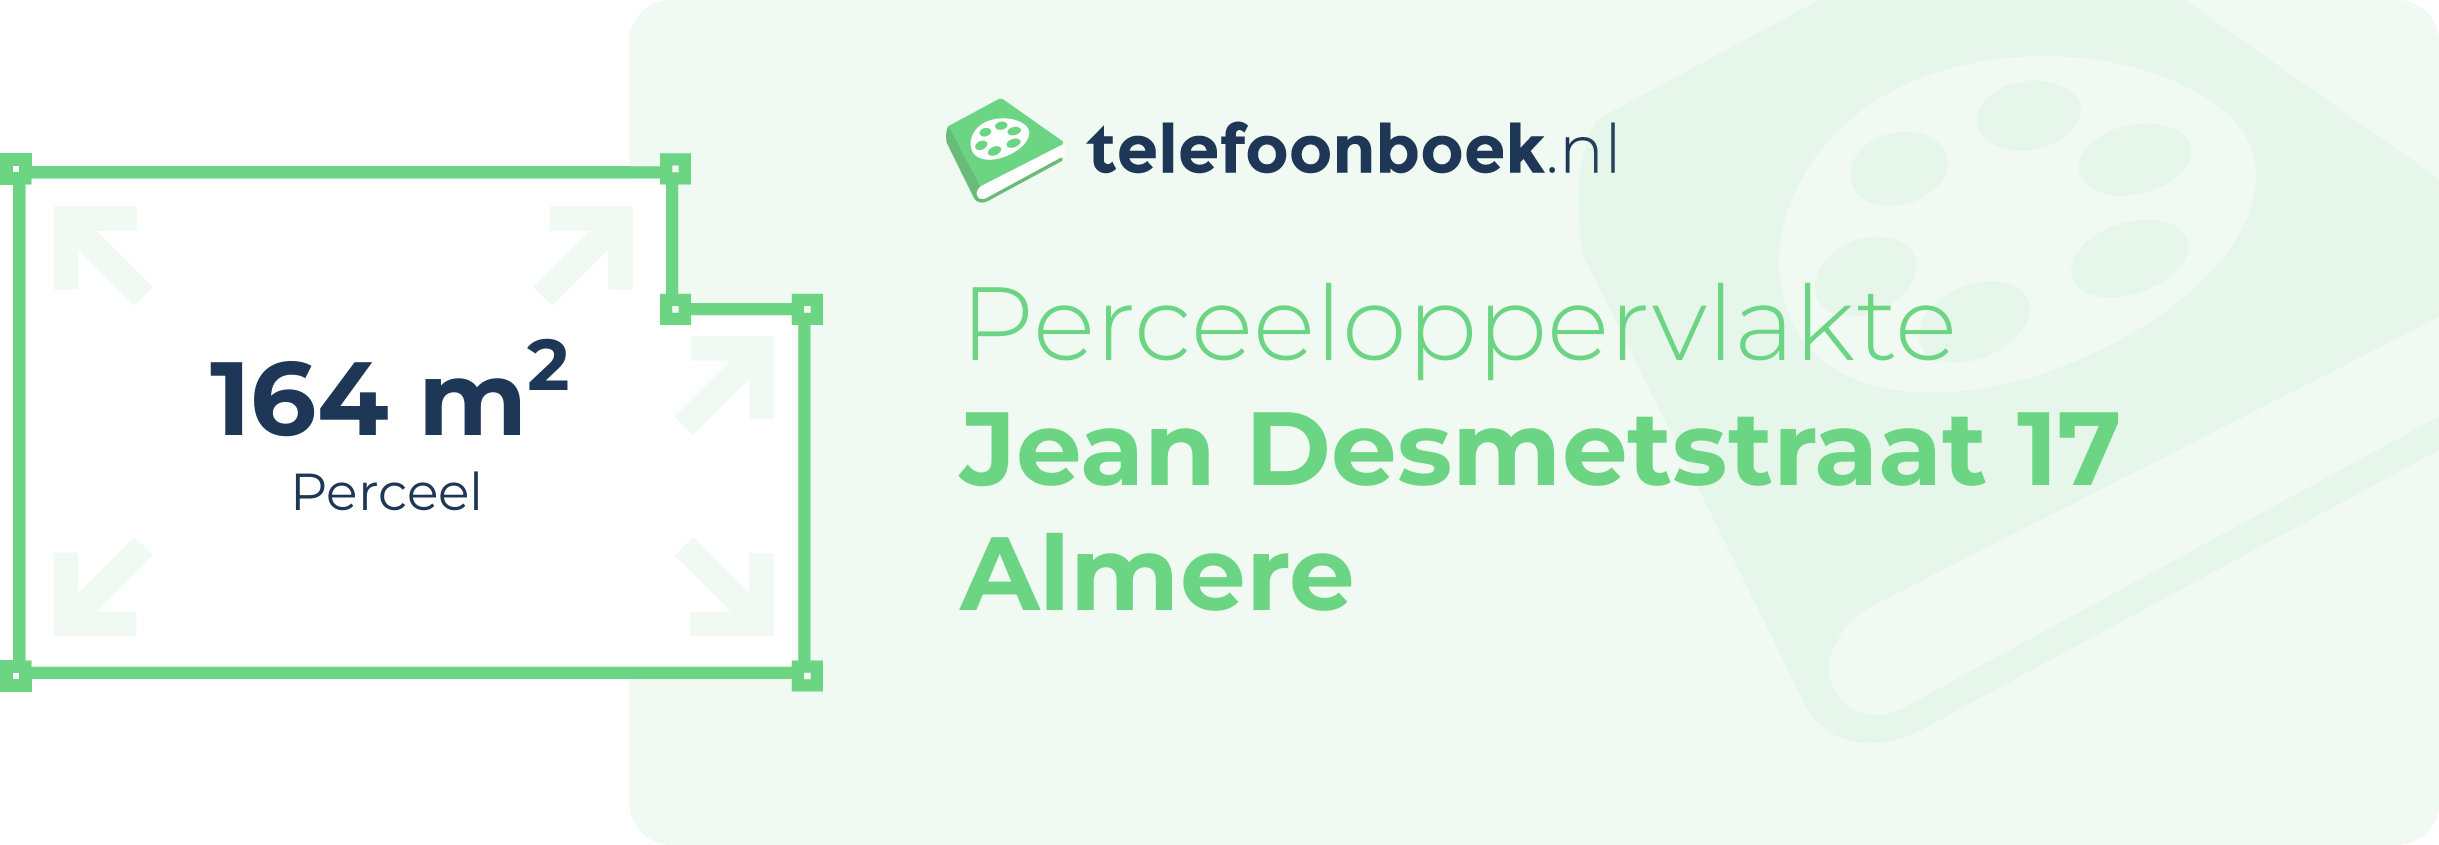 Perceeloppervlakte Jean Desmetstraat 17 Almere